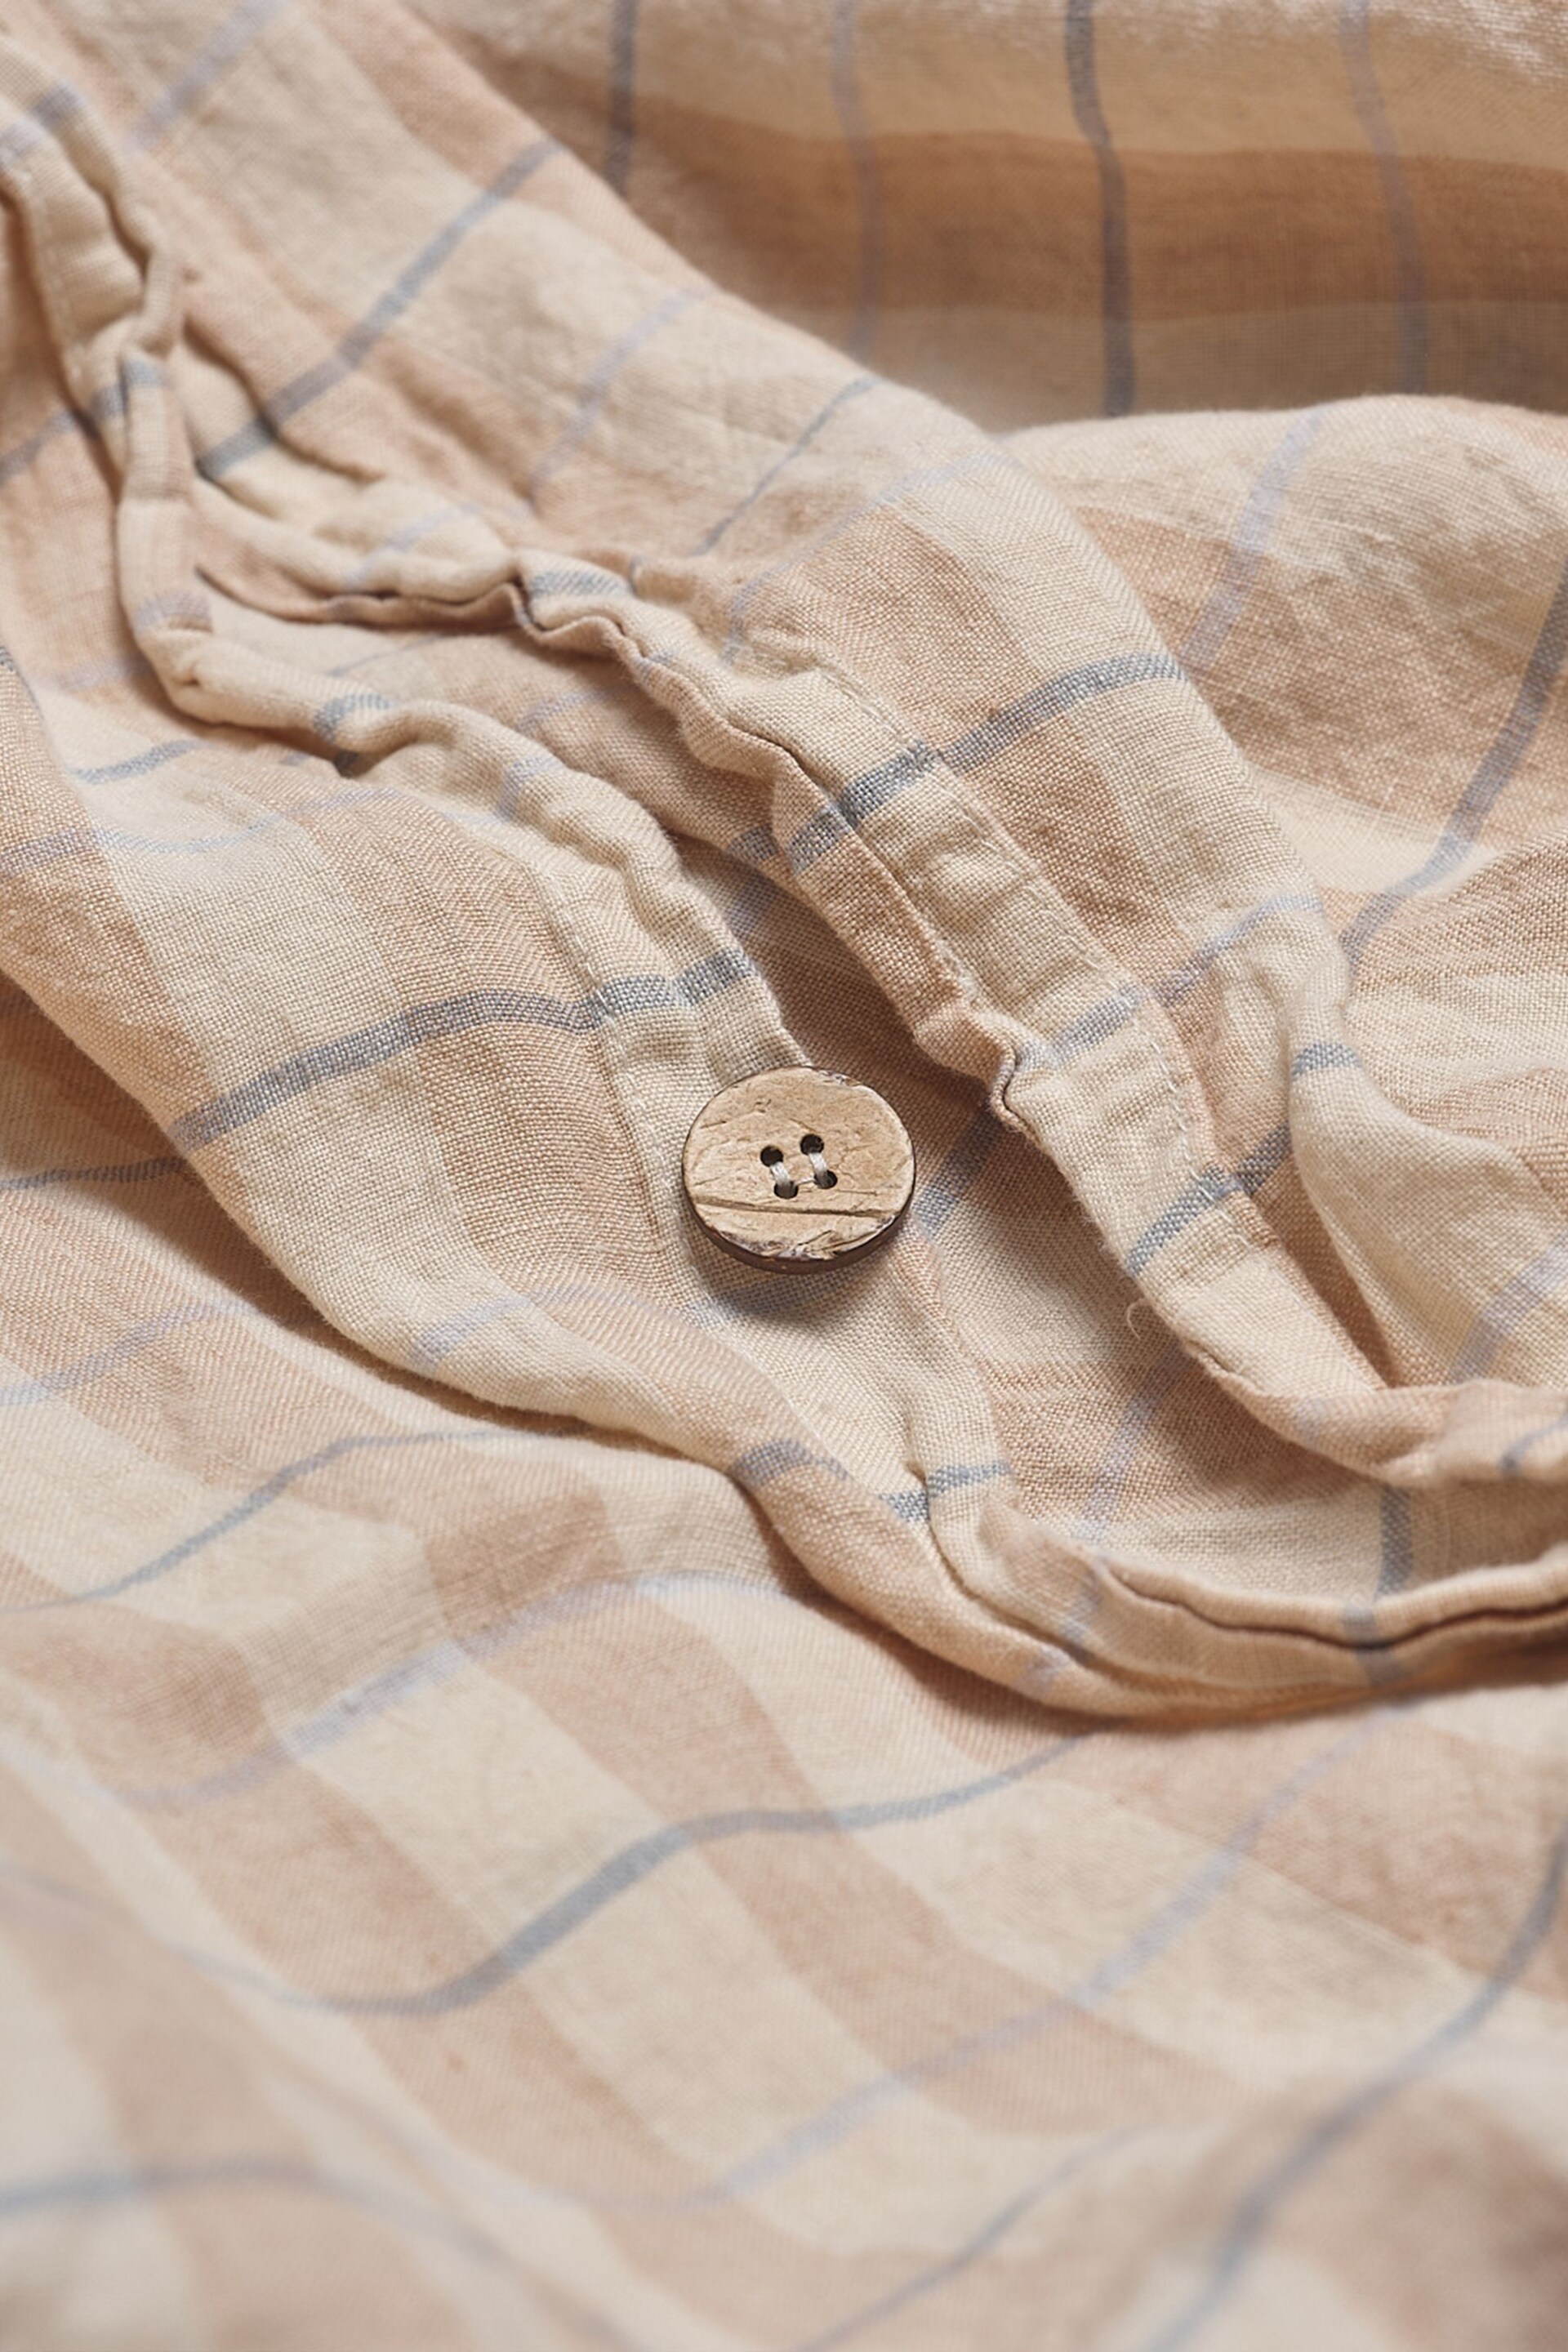 Piglet in Bed Cafe au Lait Check Stripe Linen Duvet Cover - Image 3 of 3